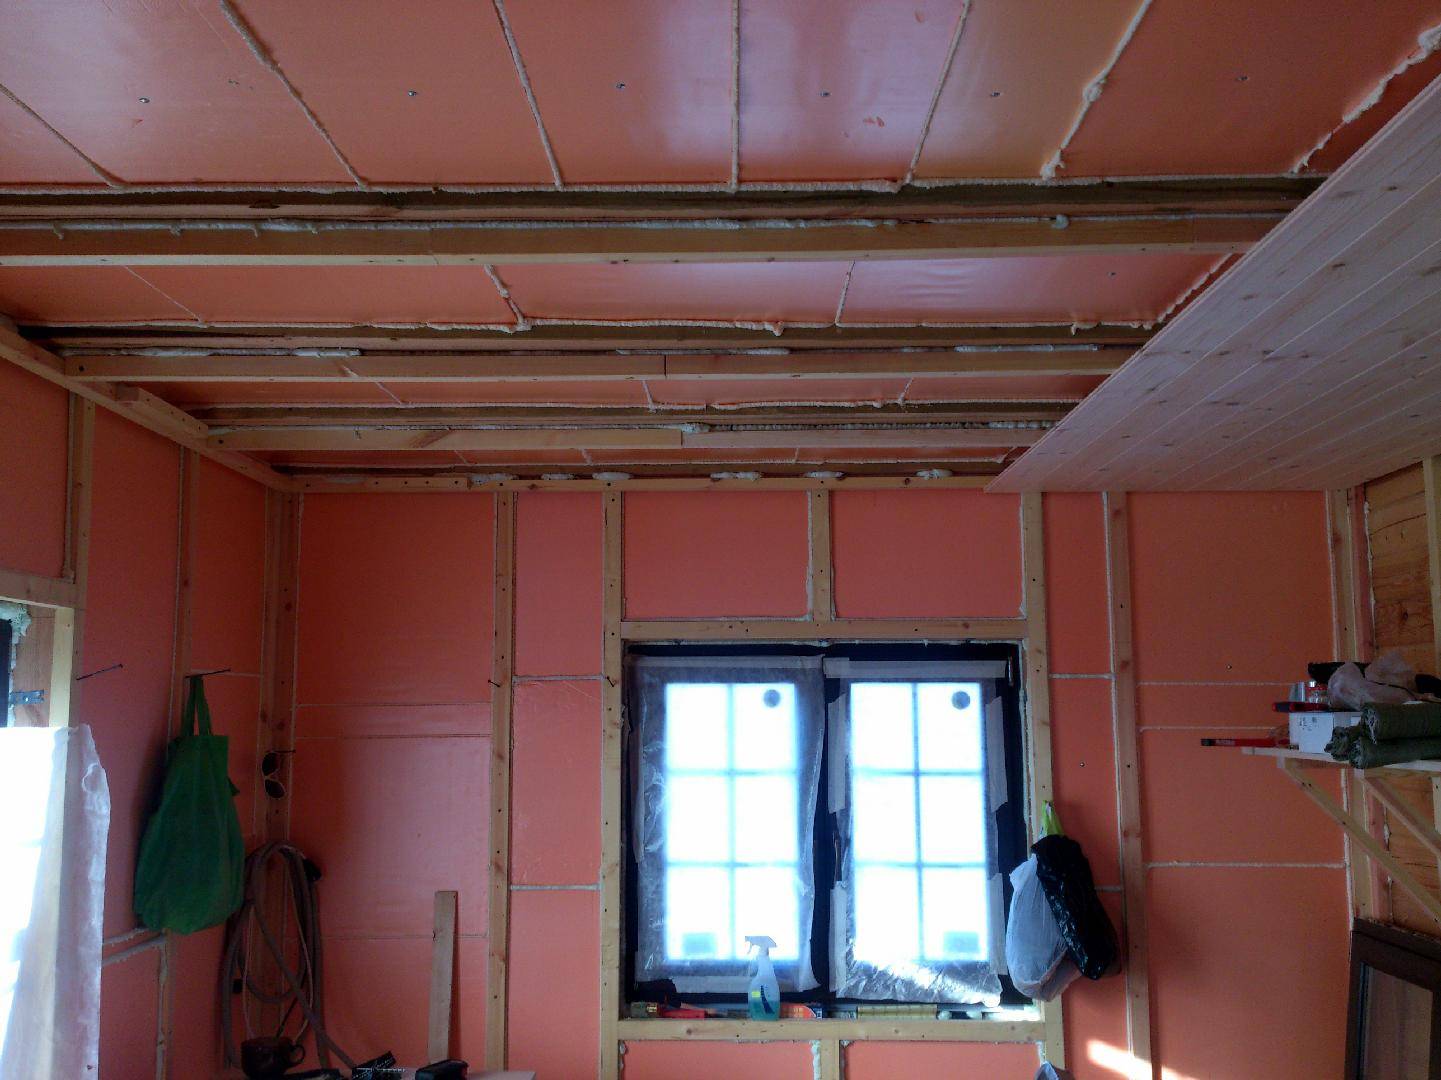 Утепление стен пенопластом внутри квартиры. плюсы и минусы использования пенополистирола | все о ремонте